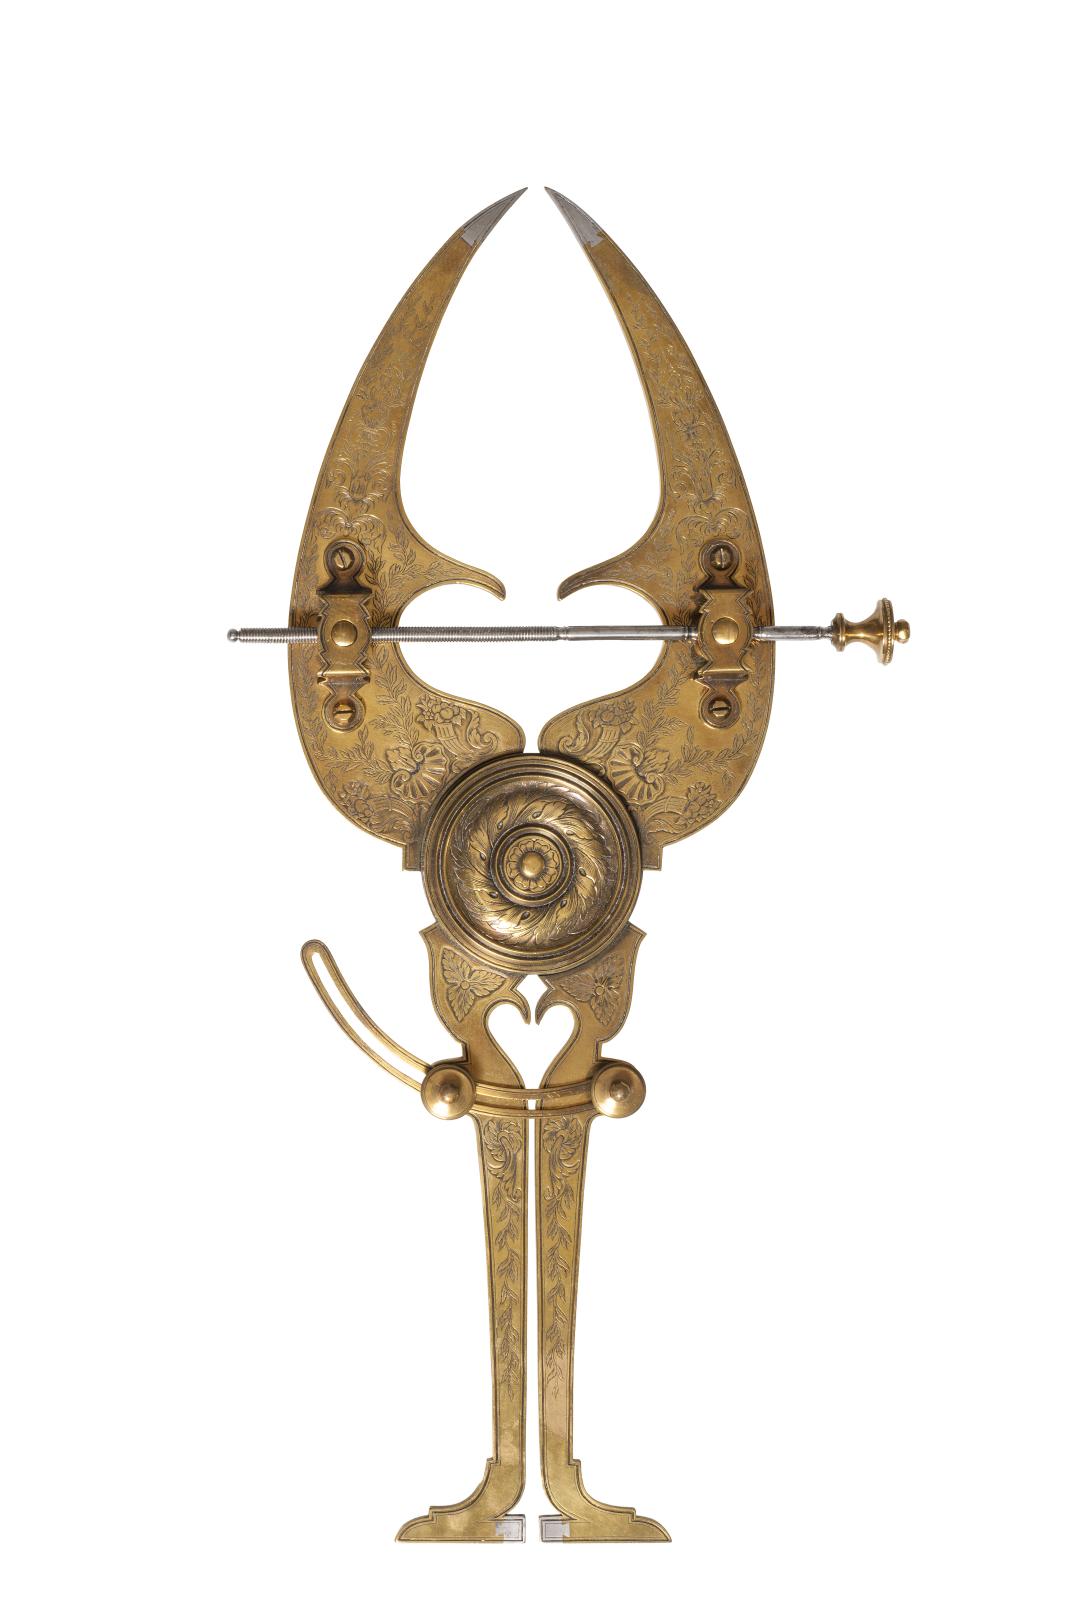 Leclair, grand compas de réduction, 2e moitié du XVIIe siècle, Paris, musée des Arts décoratifs, achat lors de la vente Doucet, 1912.